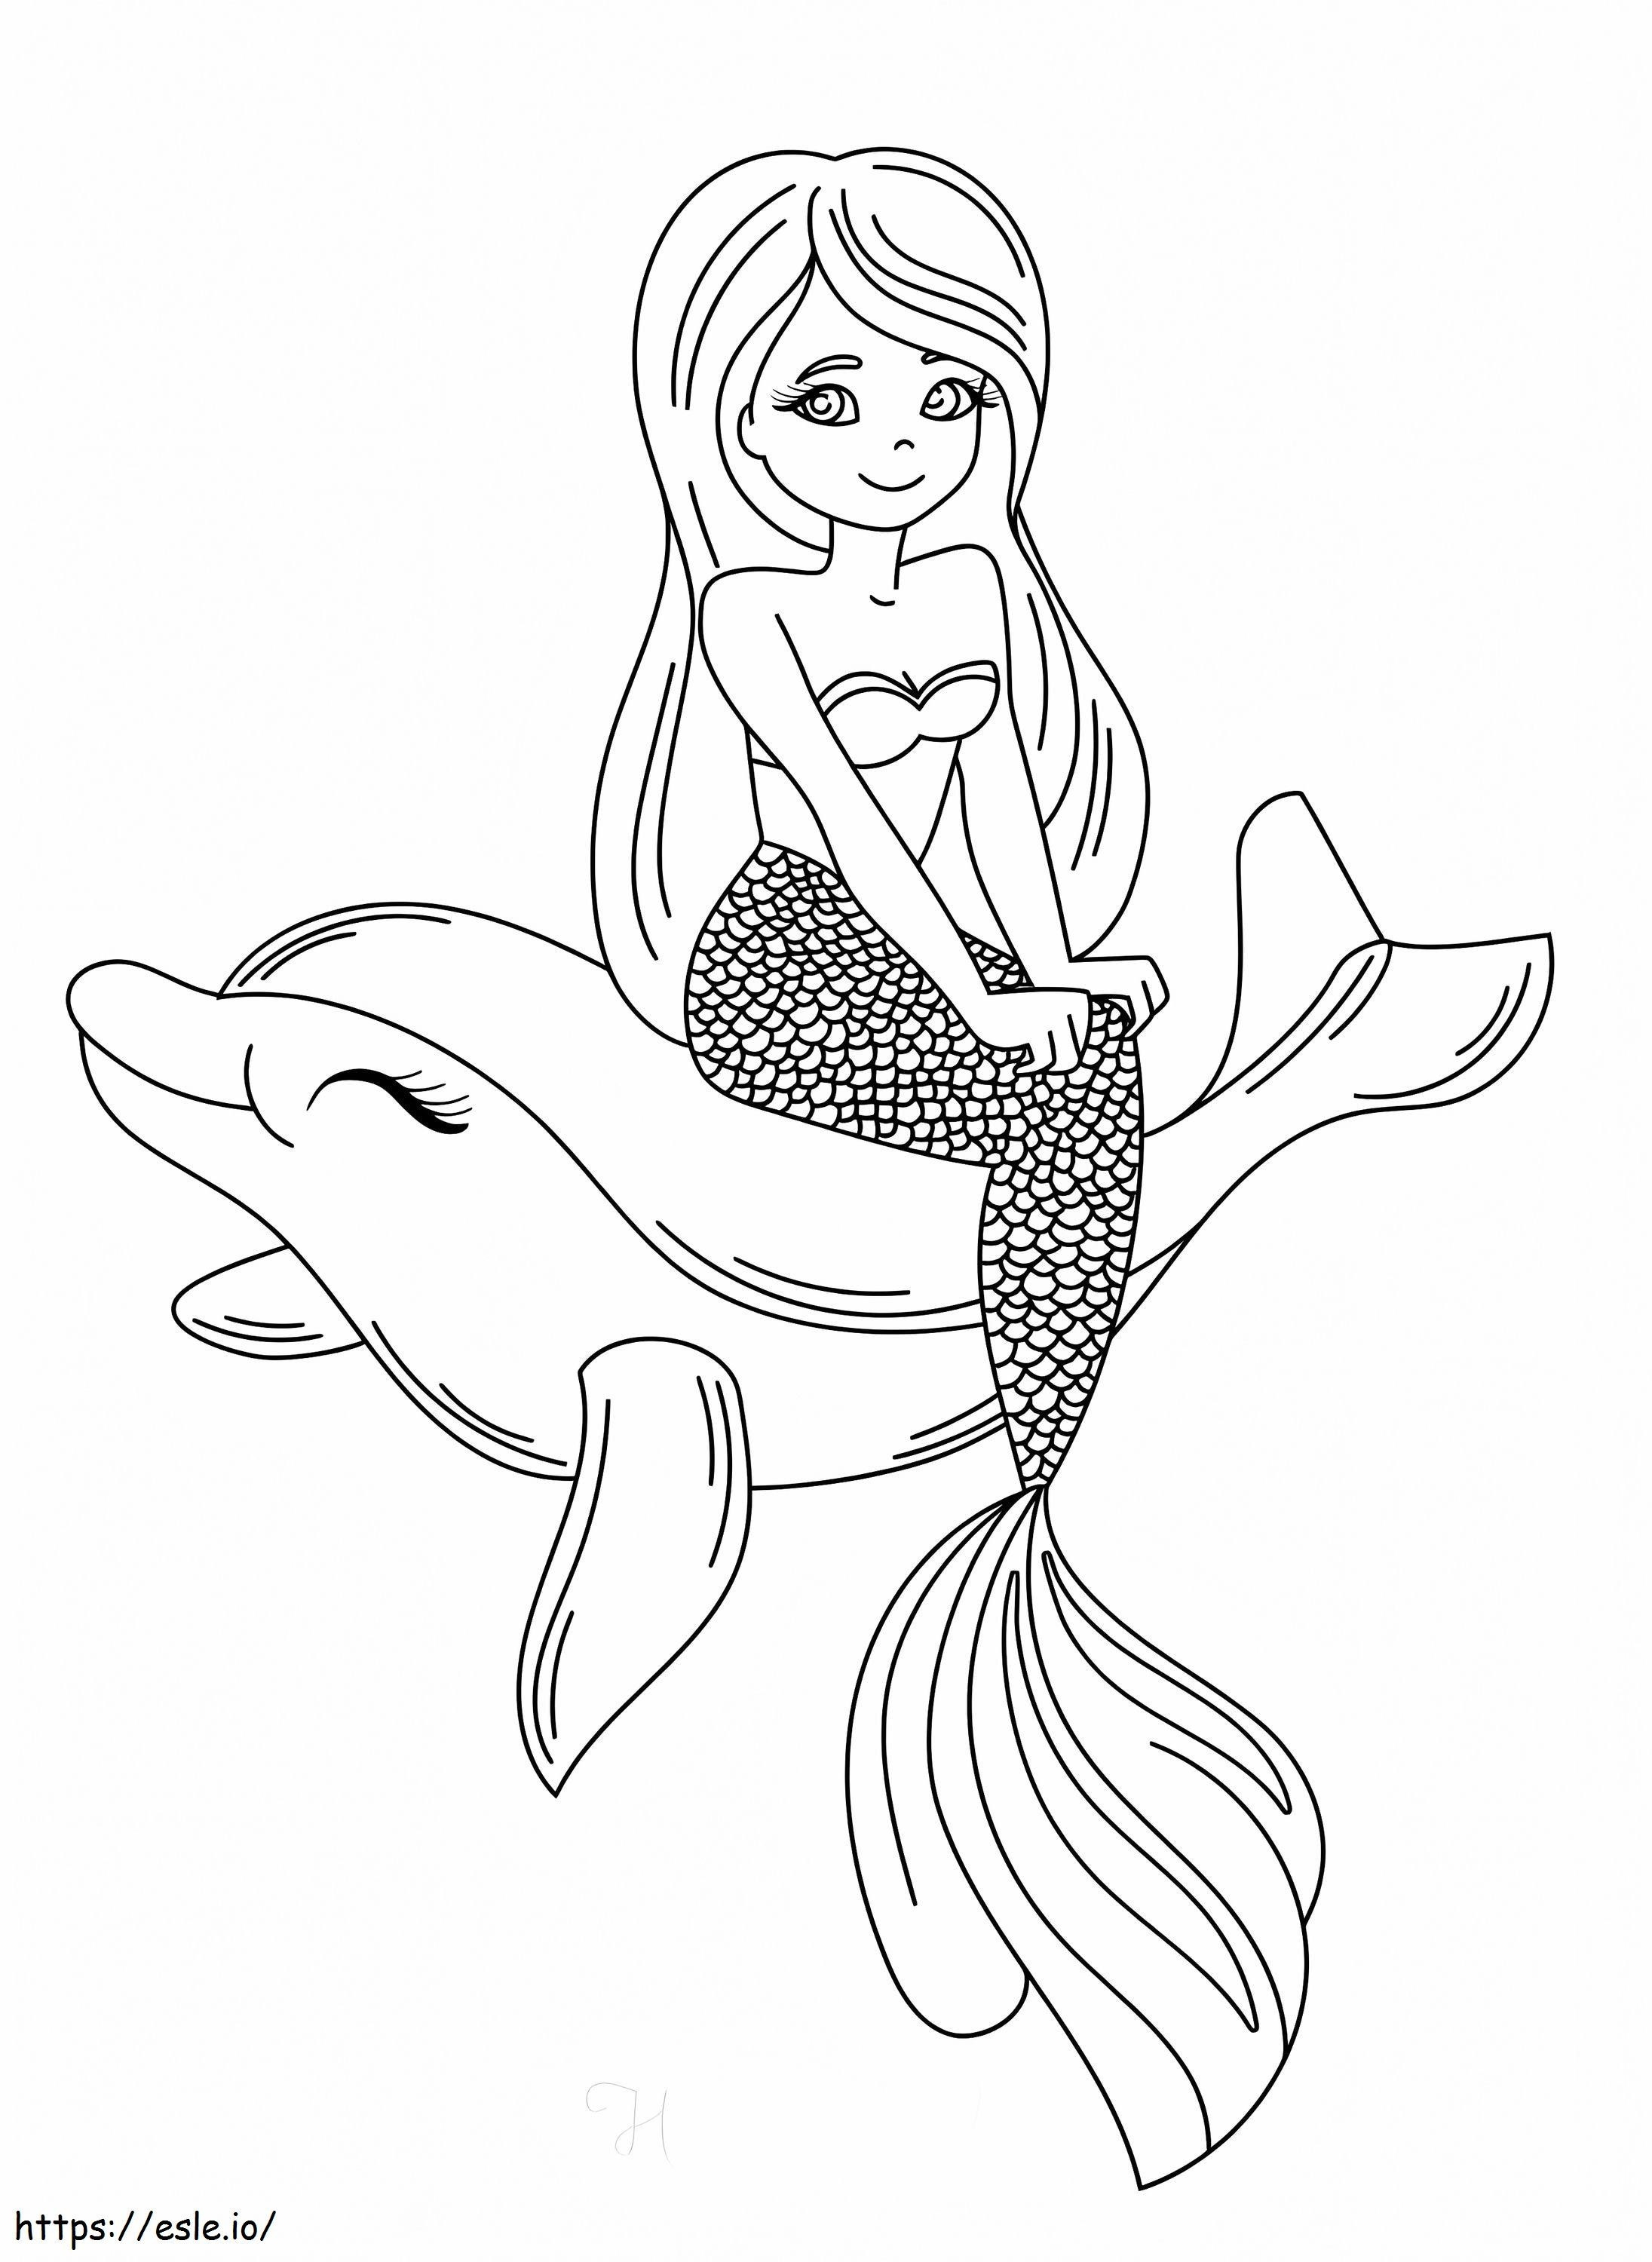 Meerjungfrau mit Delphin ausmalbilder